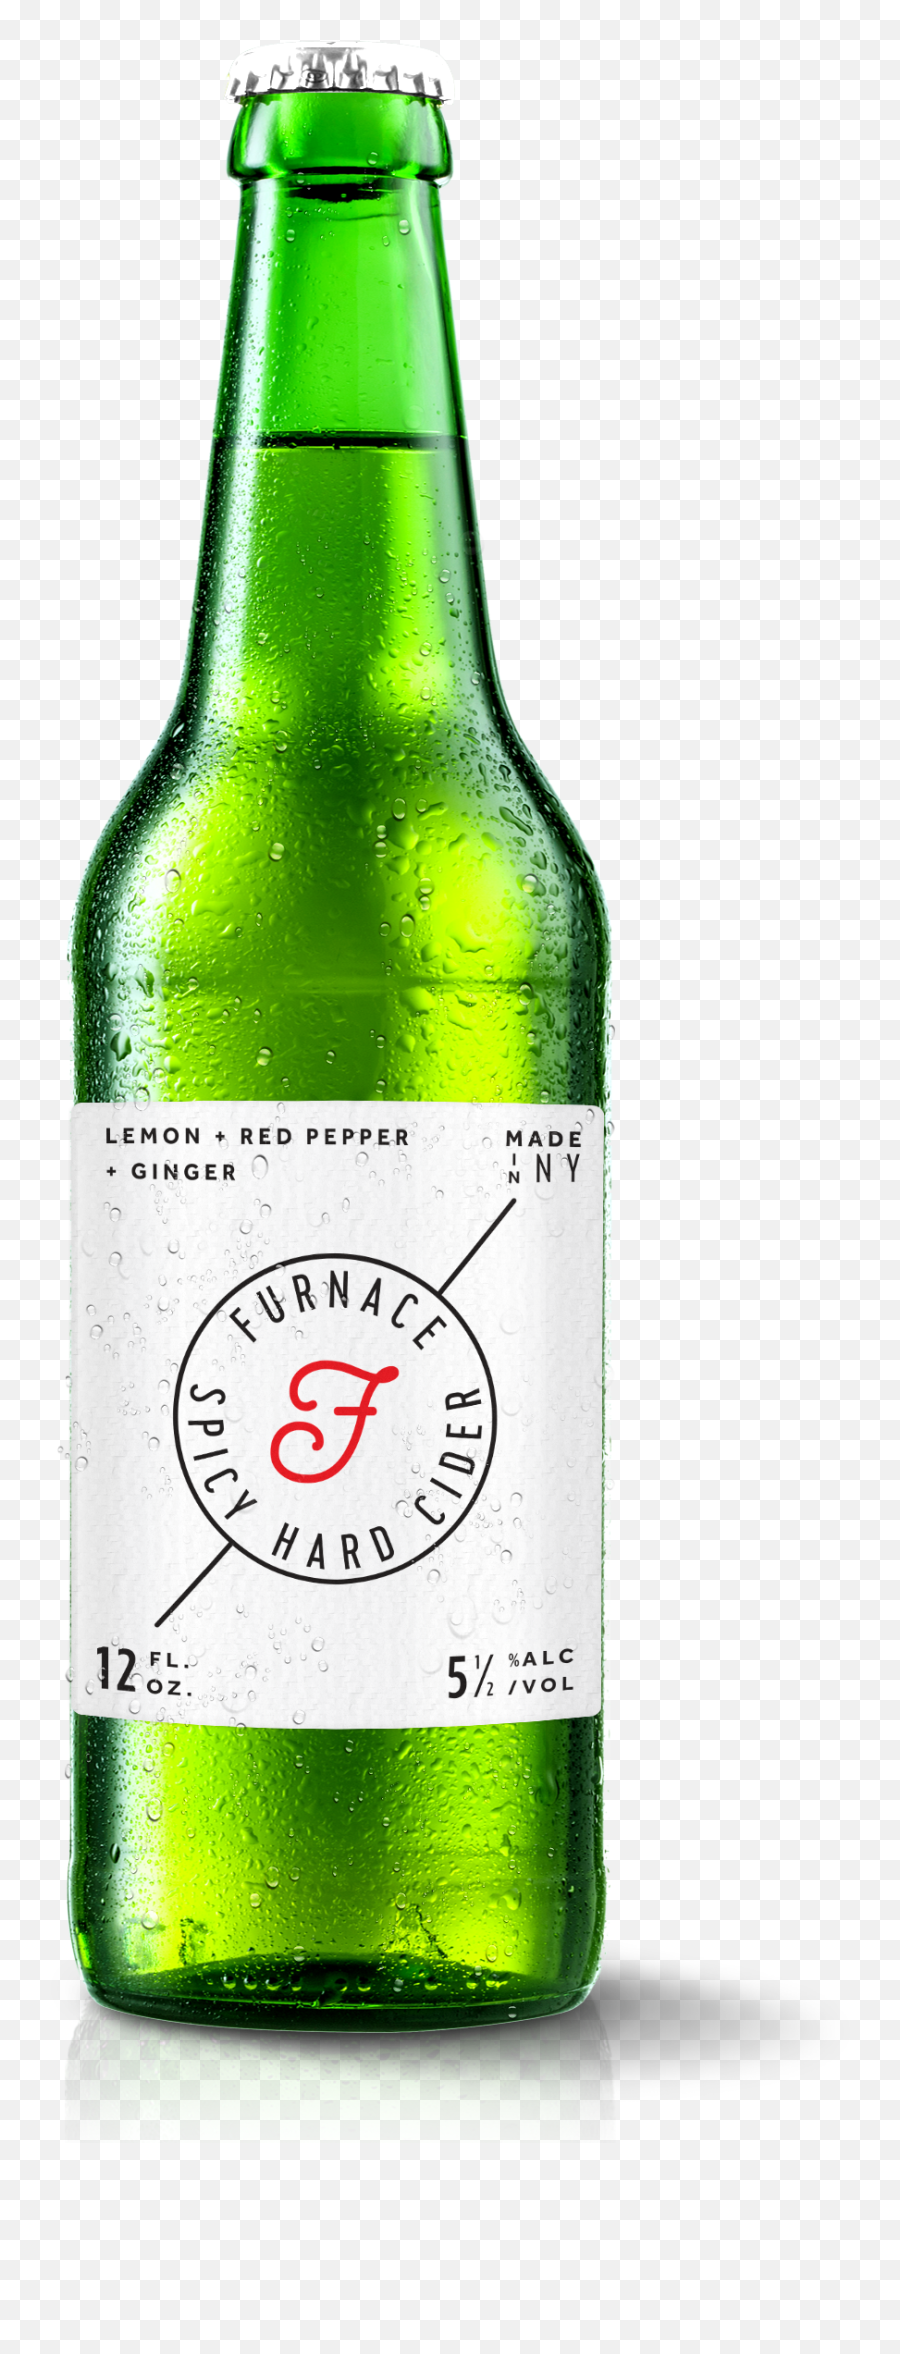 Download A Large Image Of Furnace Cider Bottle And - Bottle Glass Bottle Png,Broken Bottle Png